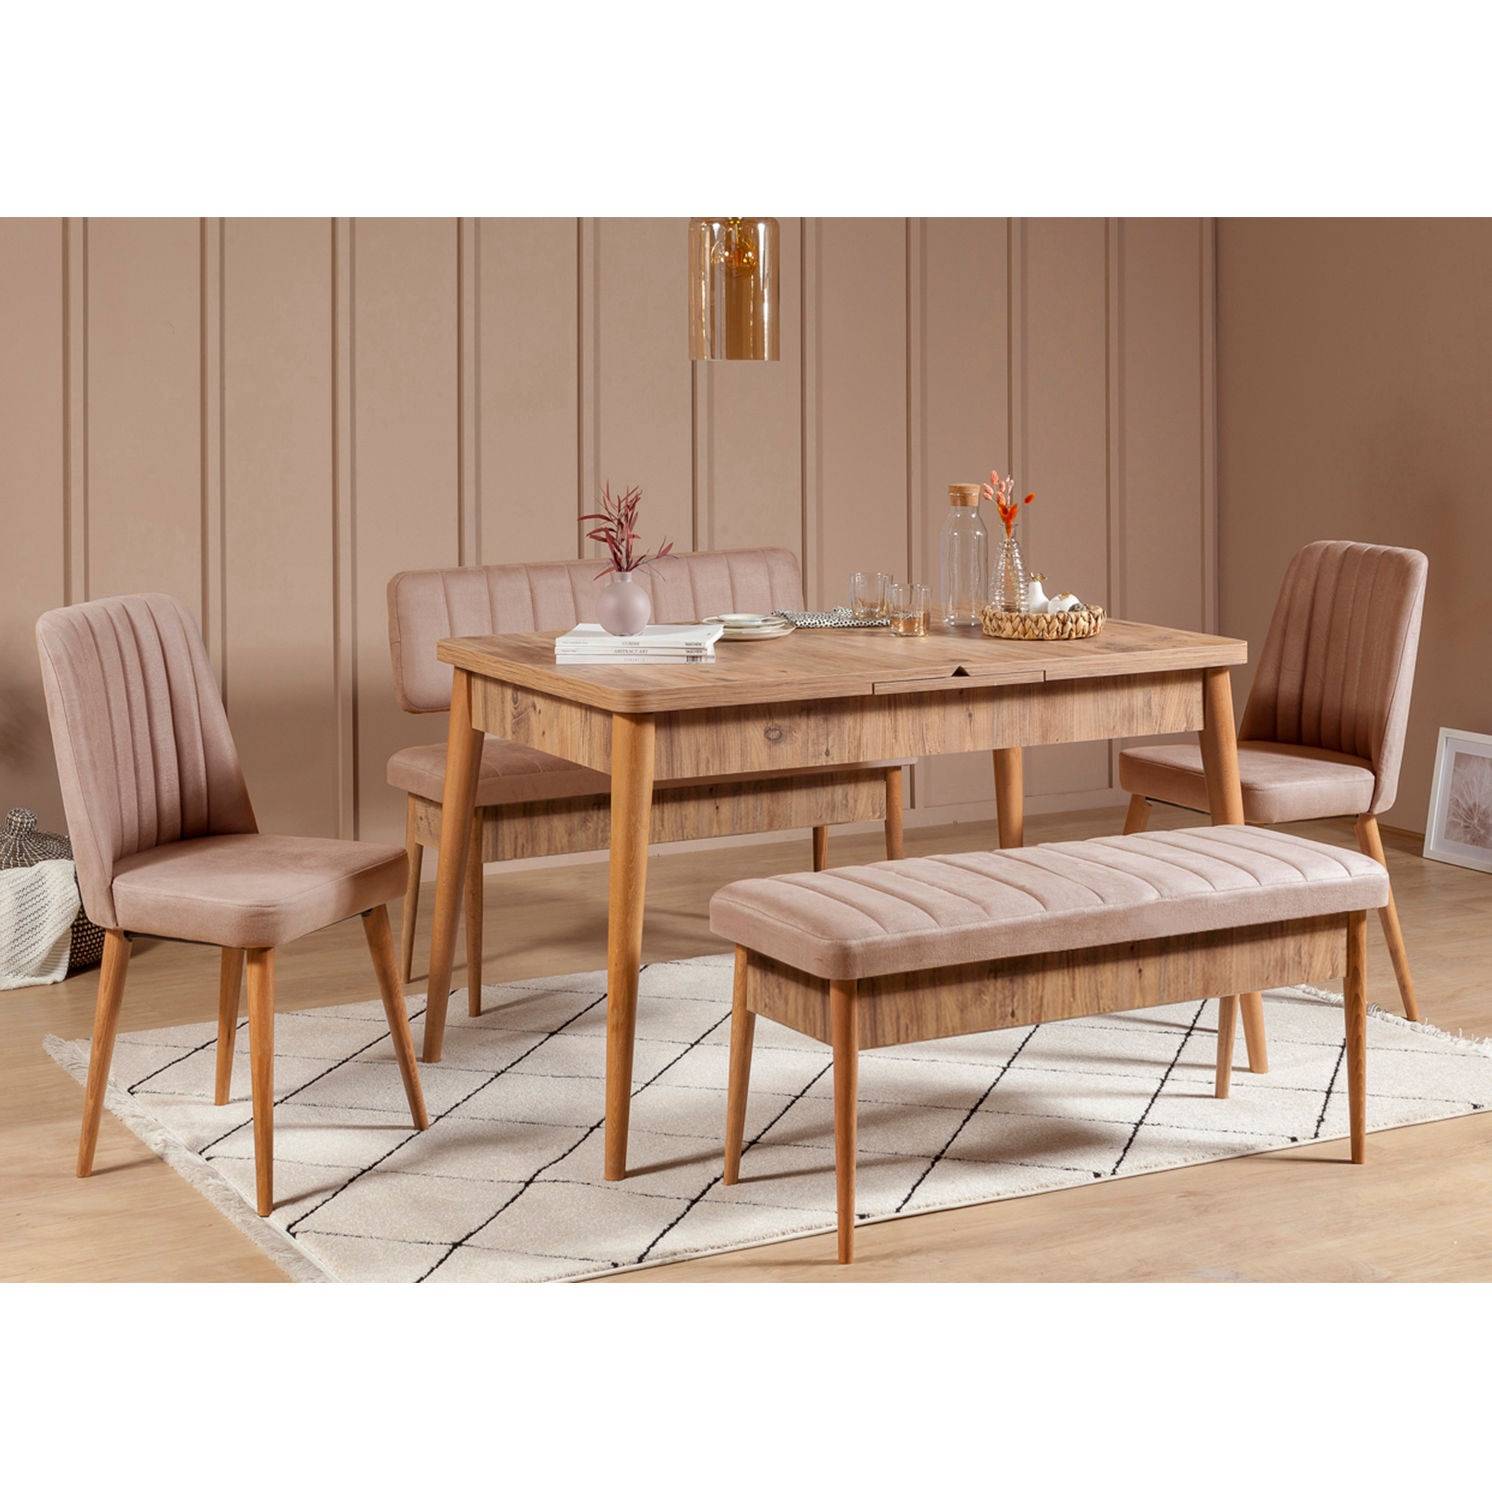 Set ausziehbarer Tisch, 2 Stühle, Bank und Sitzbank Malva Helles Holz und Stoff Beige